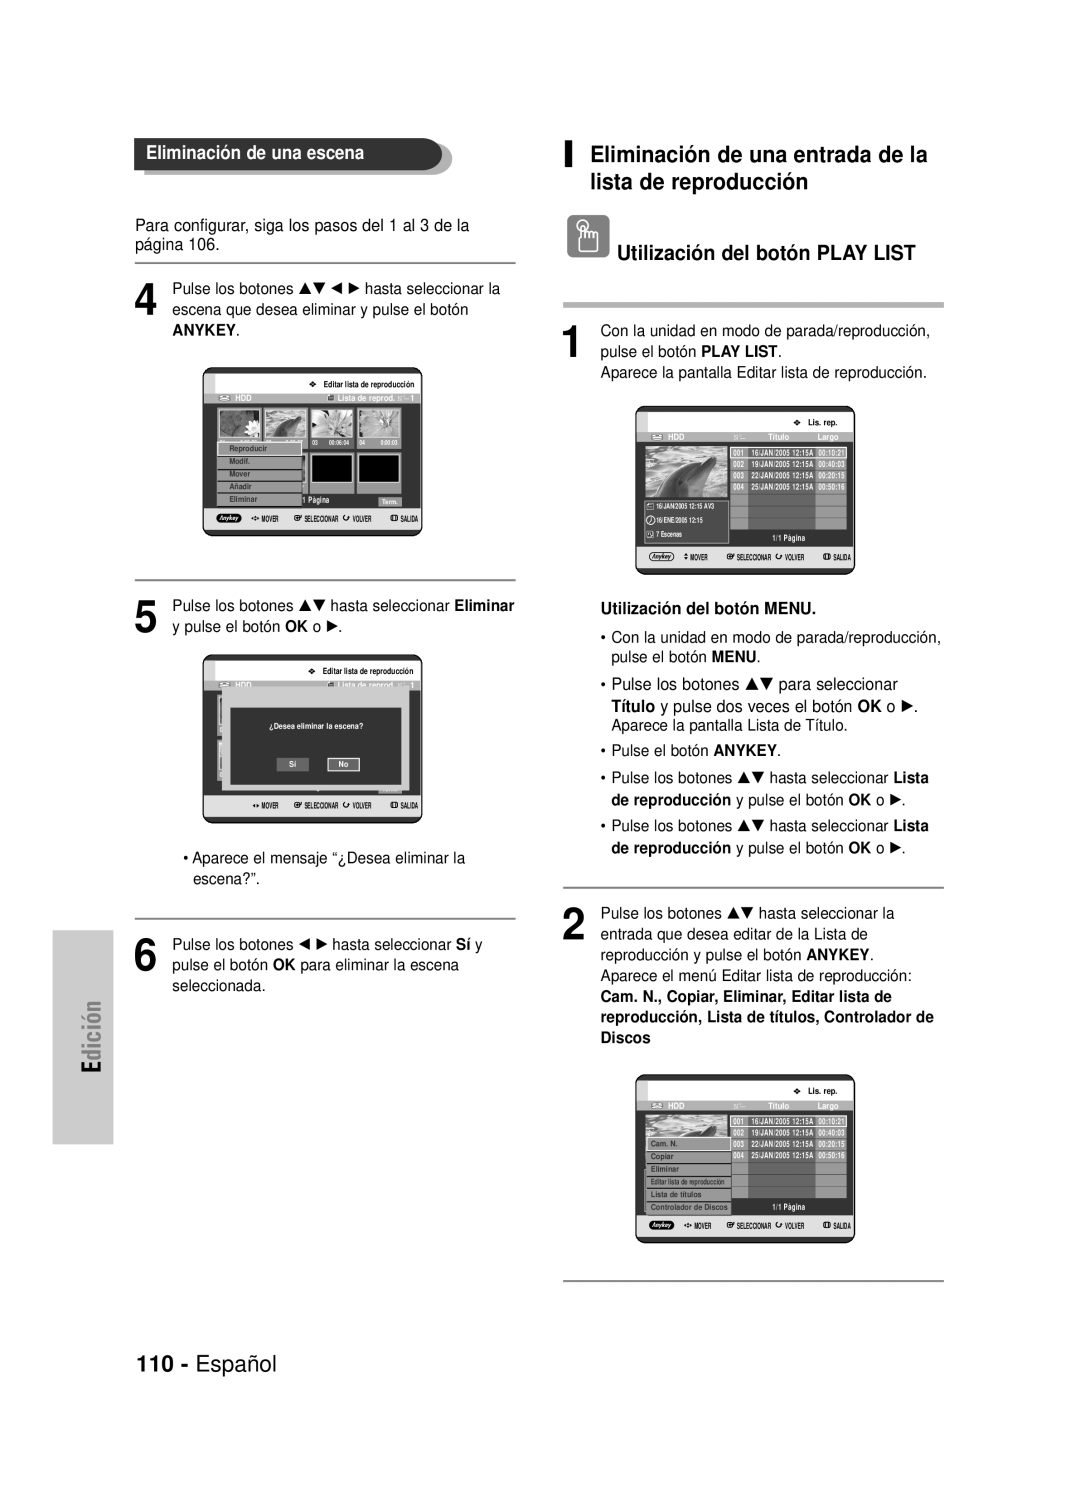 Samsung DVD-HR725/XET Eliminación de una entrada de la lista de reproducción, Español, Eliminación de una escena, Edición 